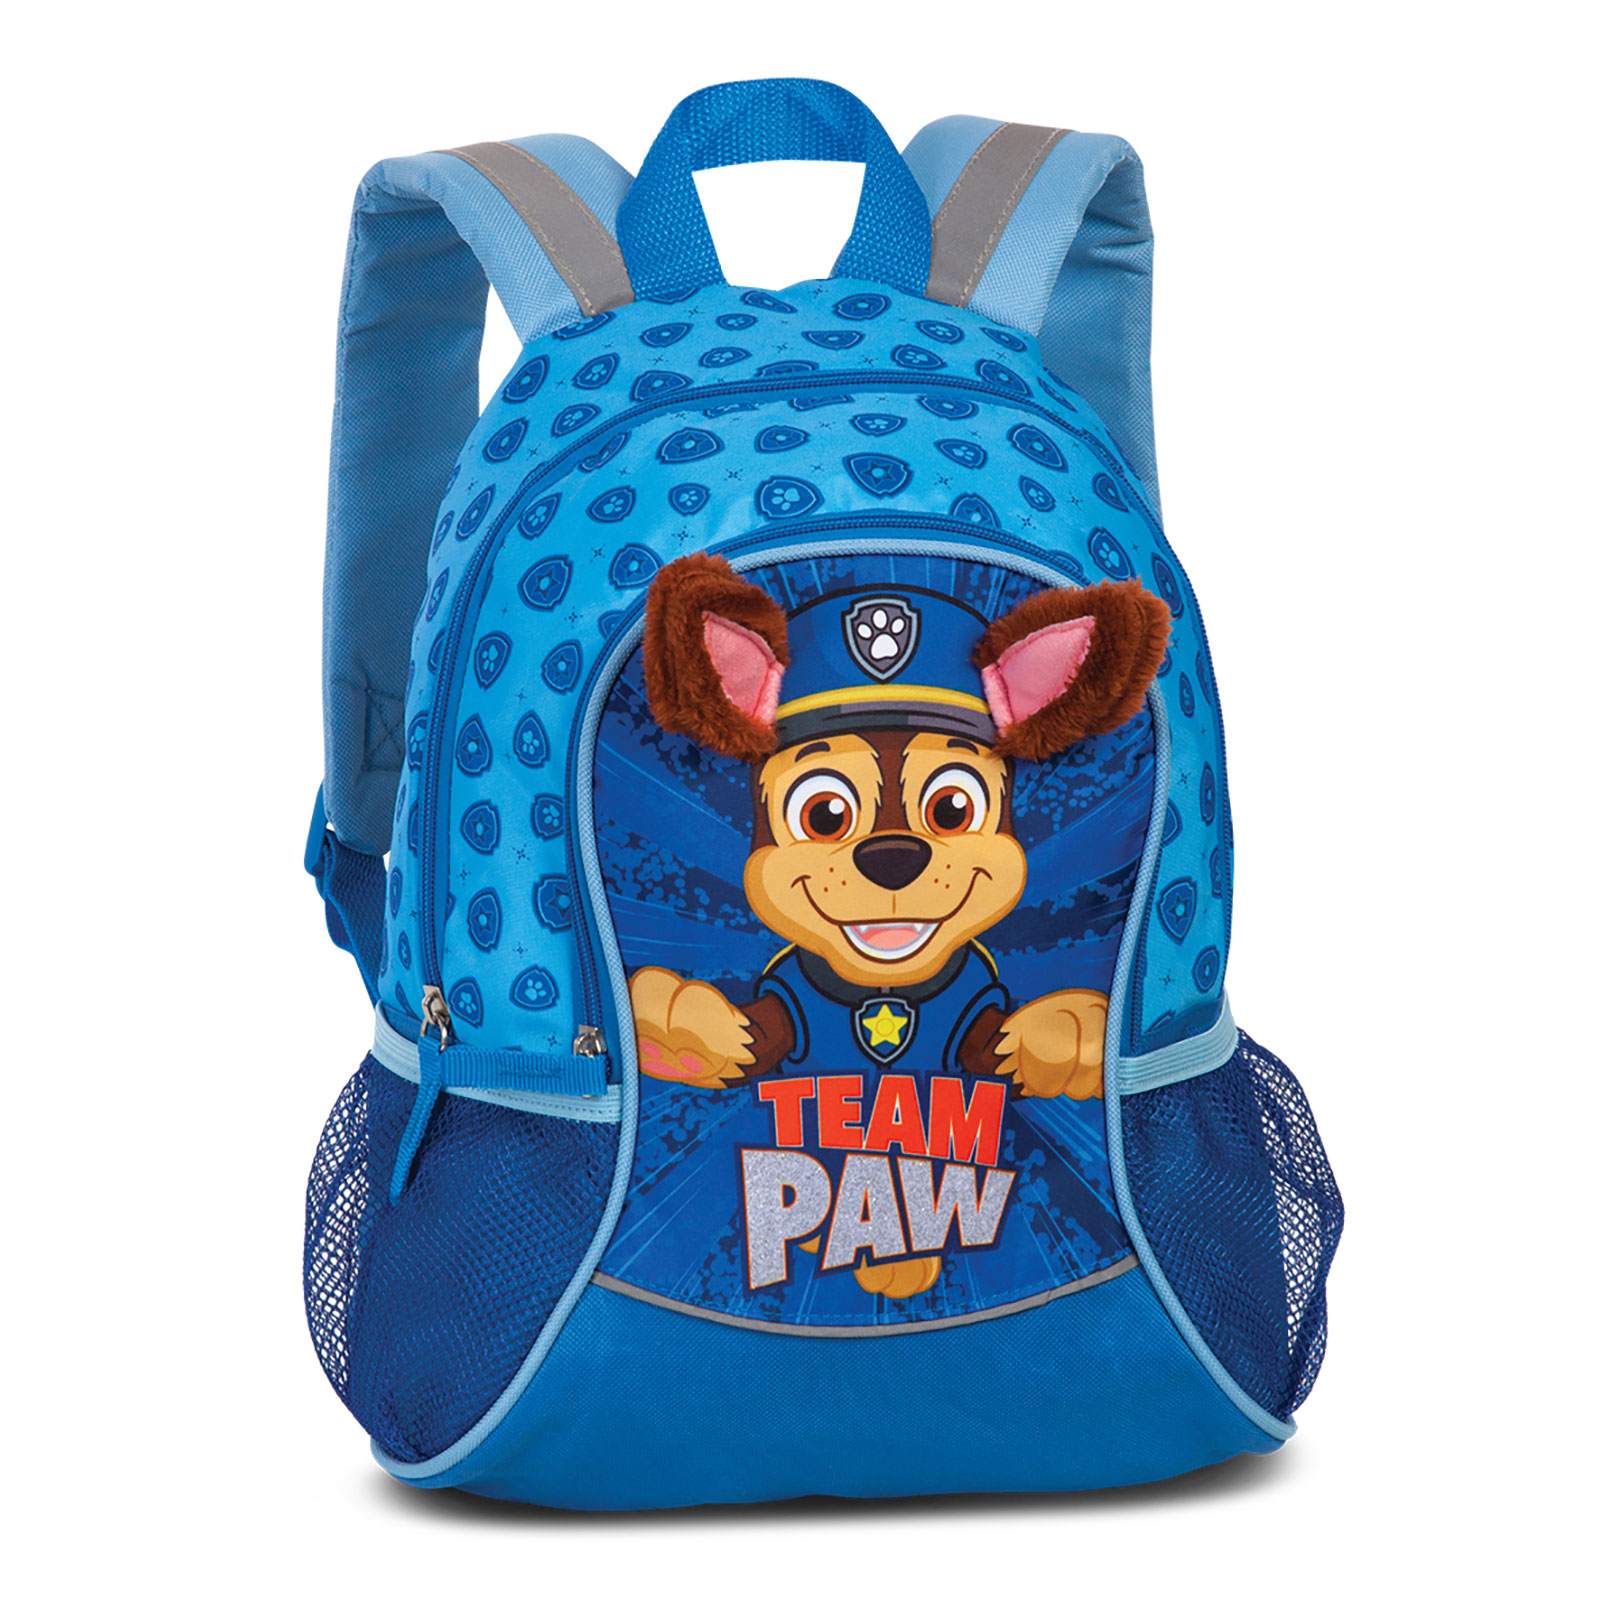 PAW Patrol Kindergarten Tasche Bag Rucksack Neu 